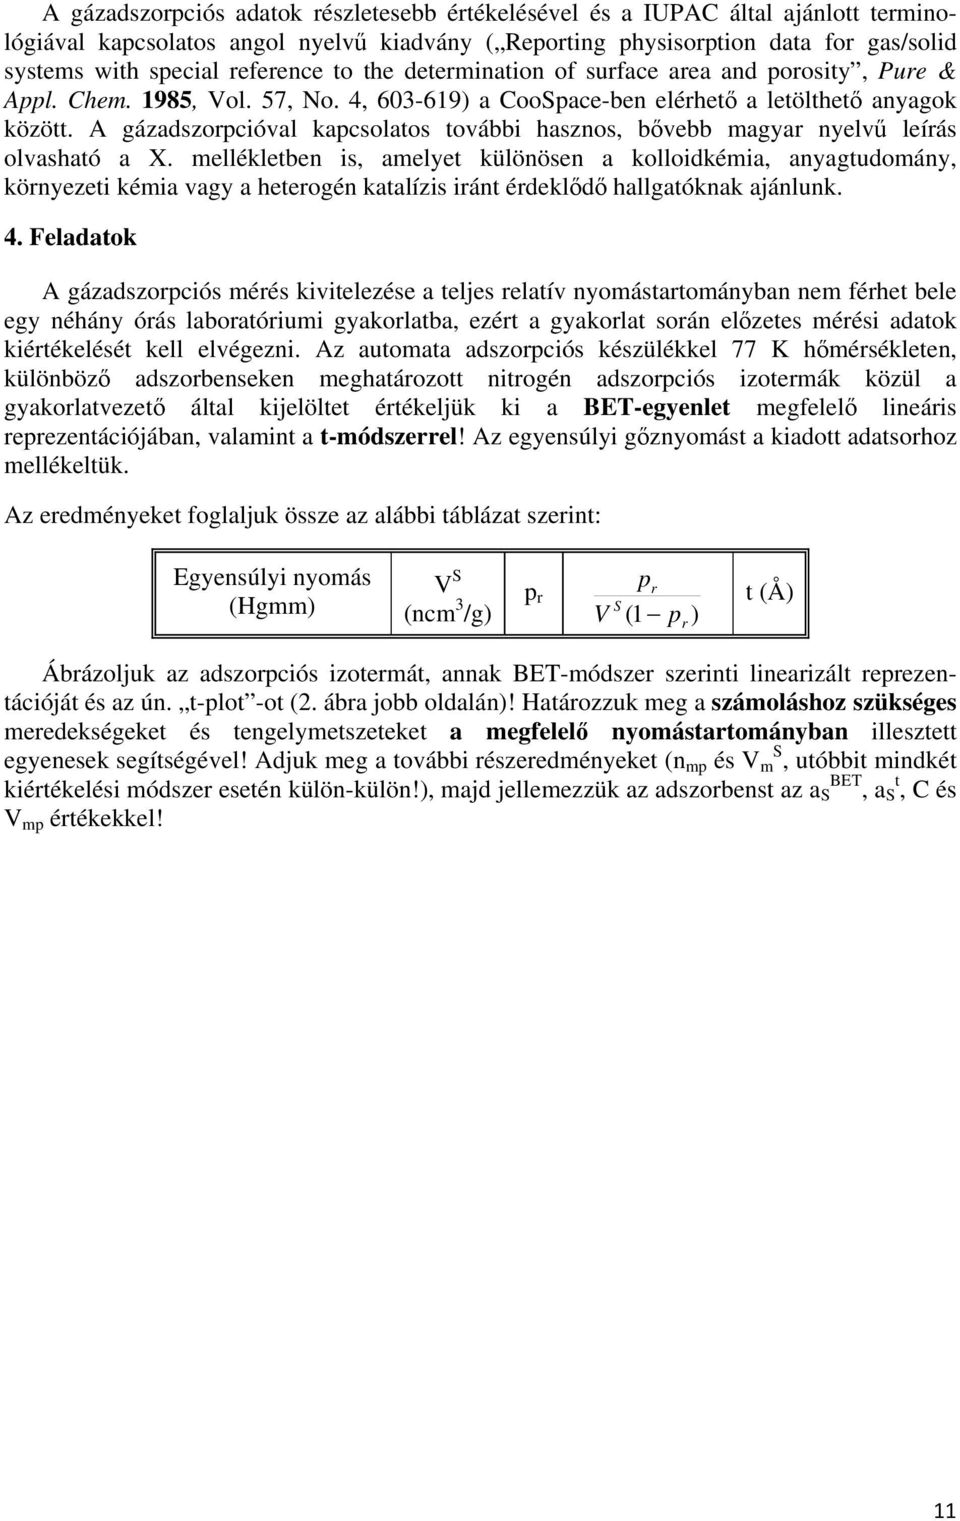 A gázadszorpcióval kapcsolatos további hasznos, bővebb magyar nyelvű leírás olvasható a X.